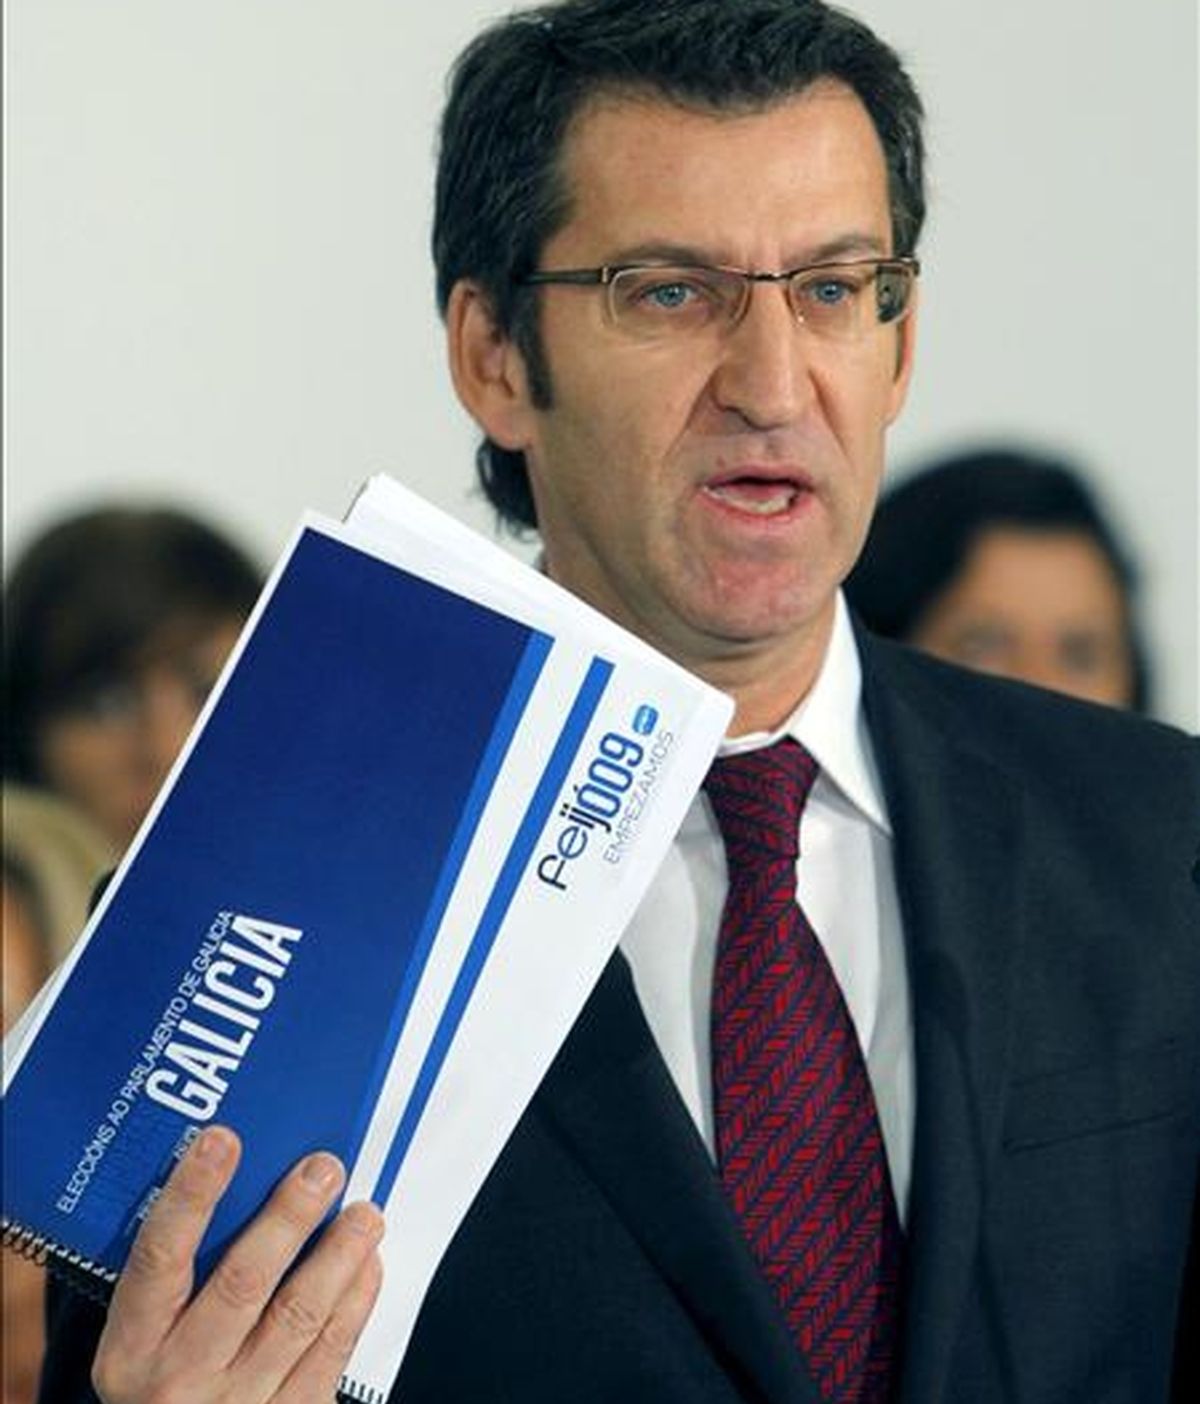 El candidato del PPdeG a la Presidencia de la Xunta, Alberto Núñez Feijóo, durante la presentación del programa electoral del Partido Popular, ayer en Santiago de Compostela. EFE